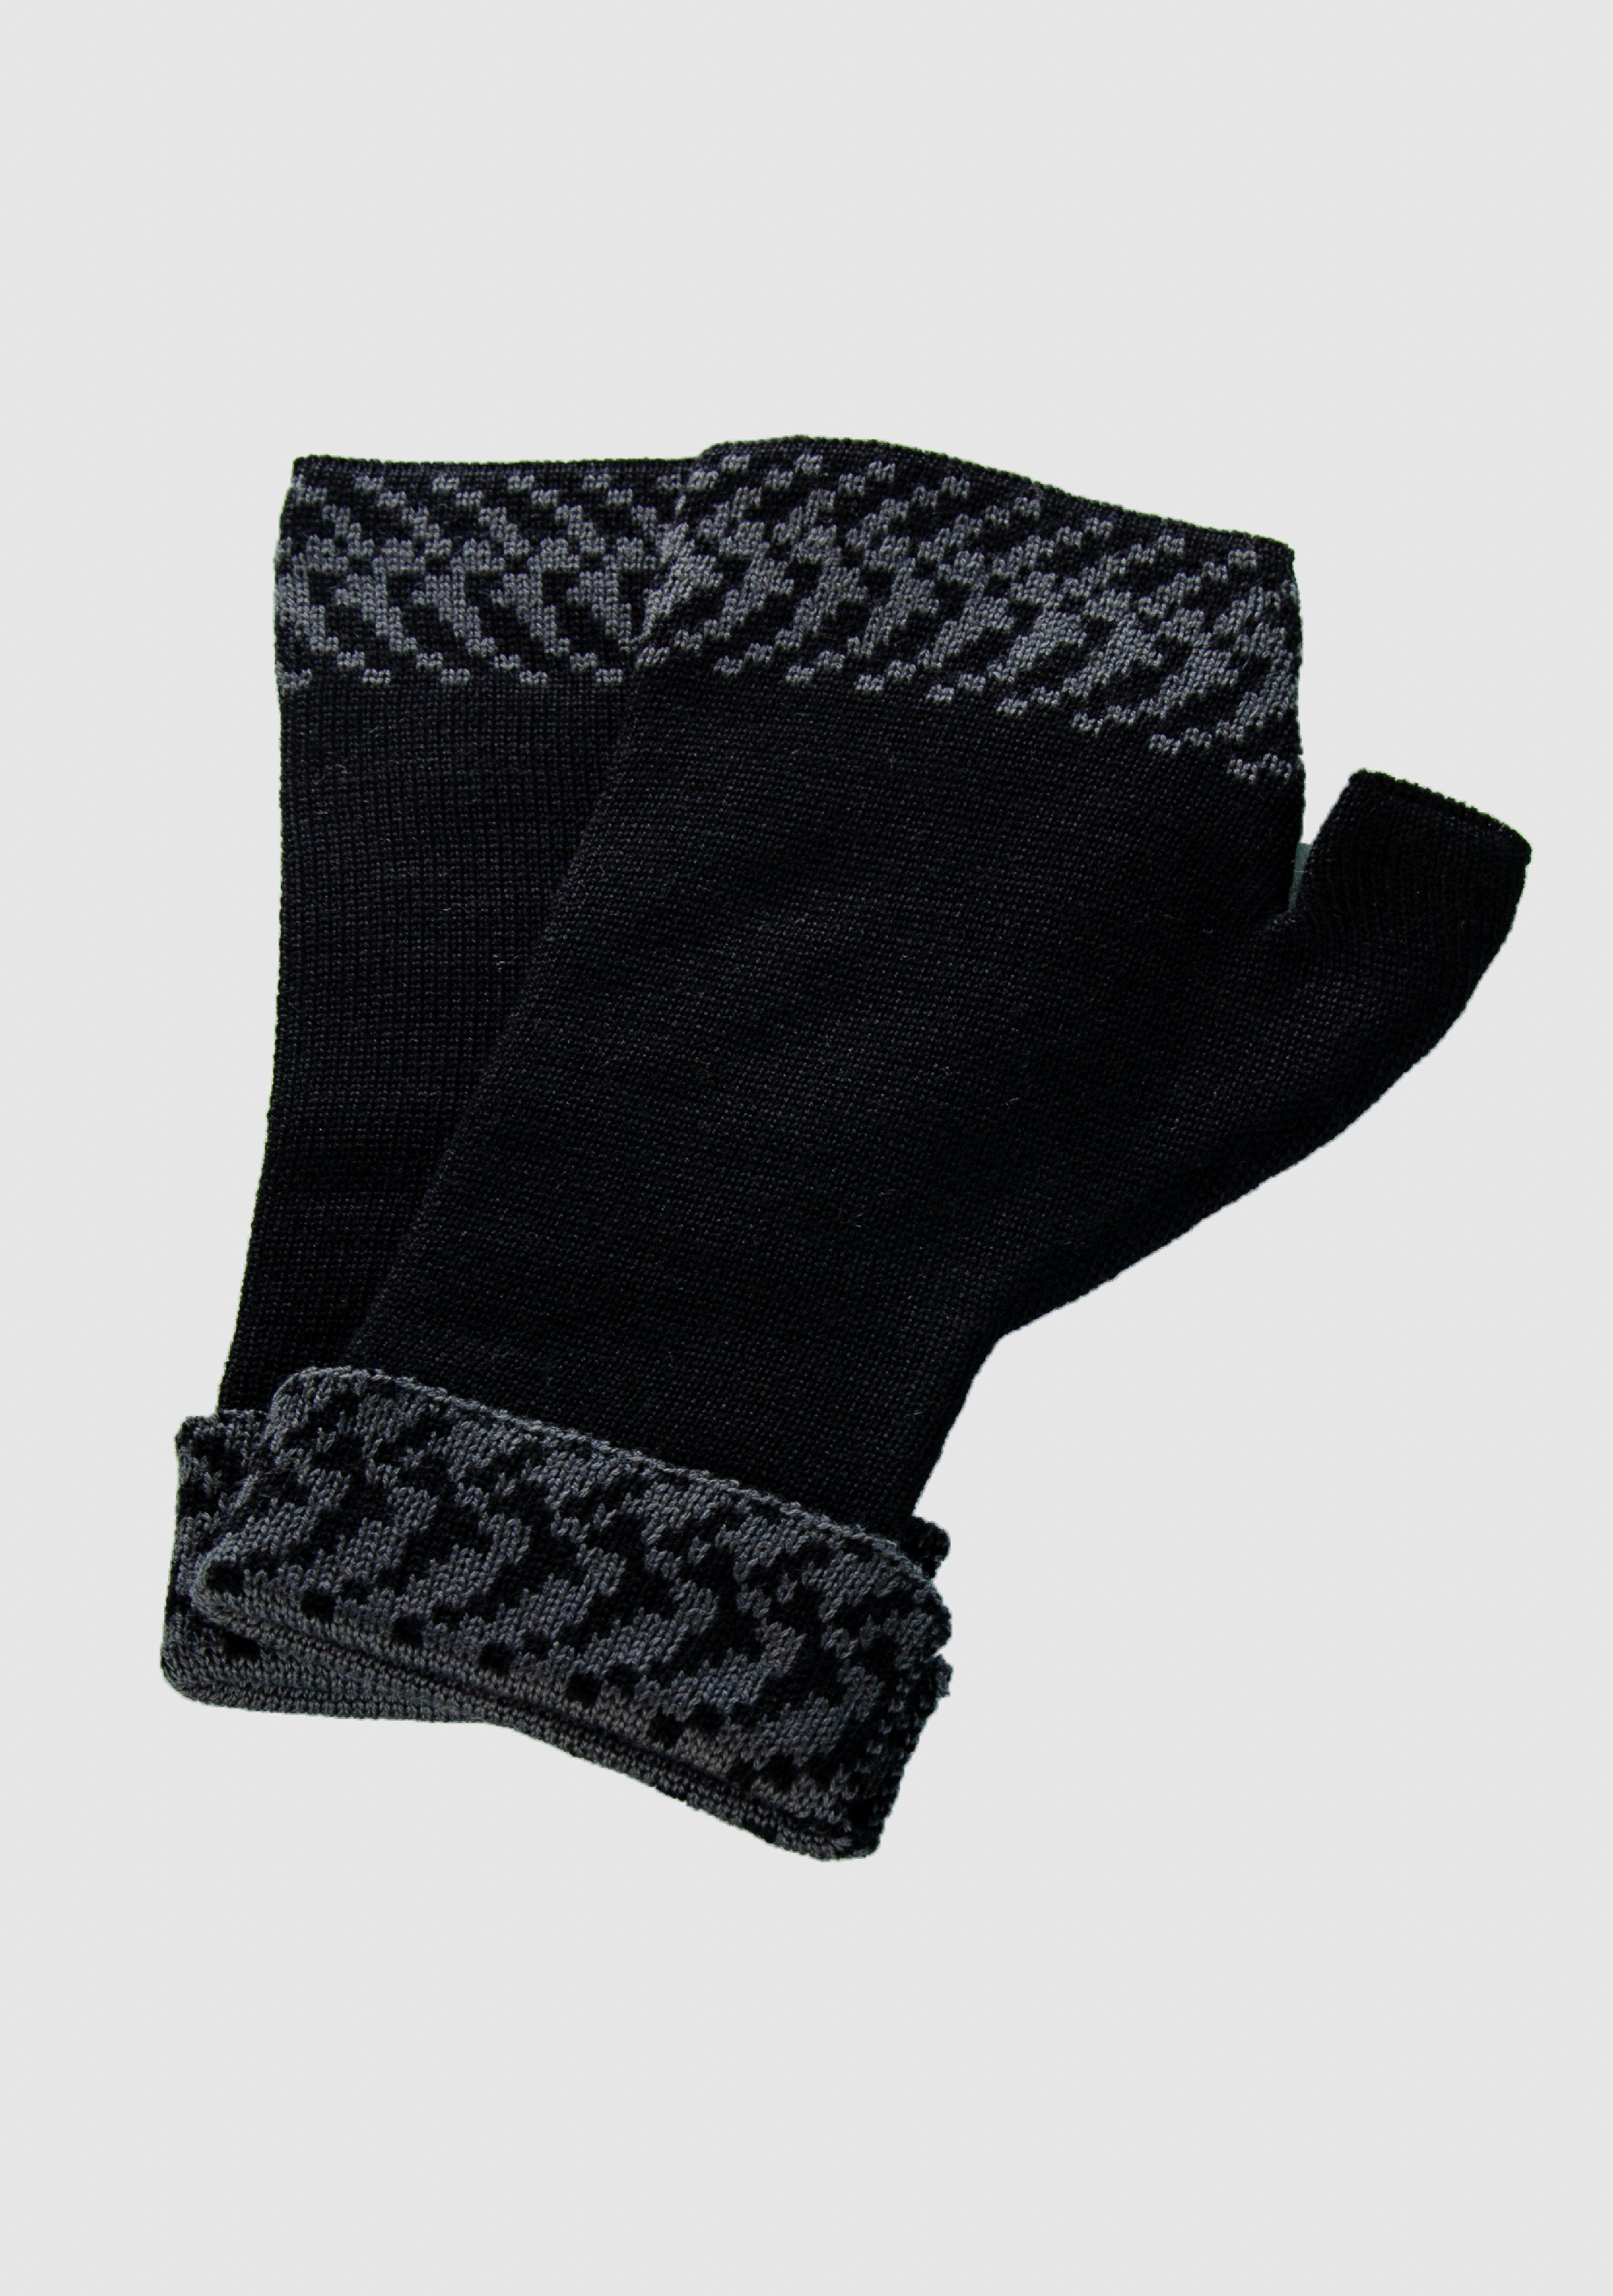 schwarz_graphit LANARTO extrasoft vielen aus slow Farben fashion Pixel Handwärmer Merino Strickhandschuhe in 100% Merino